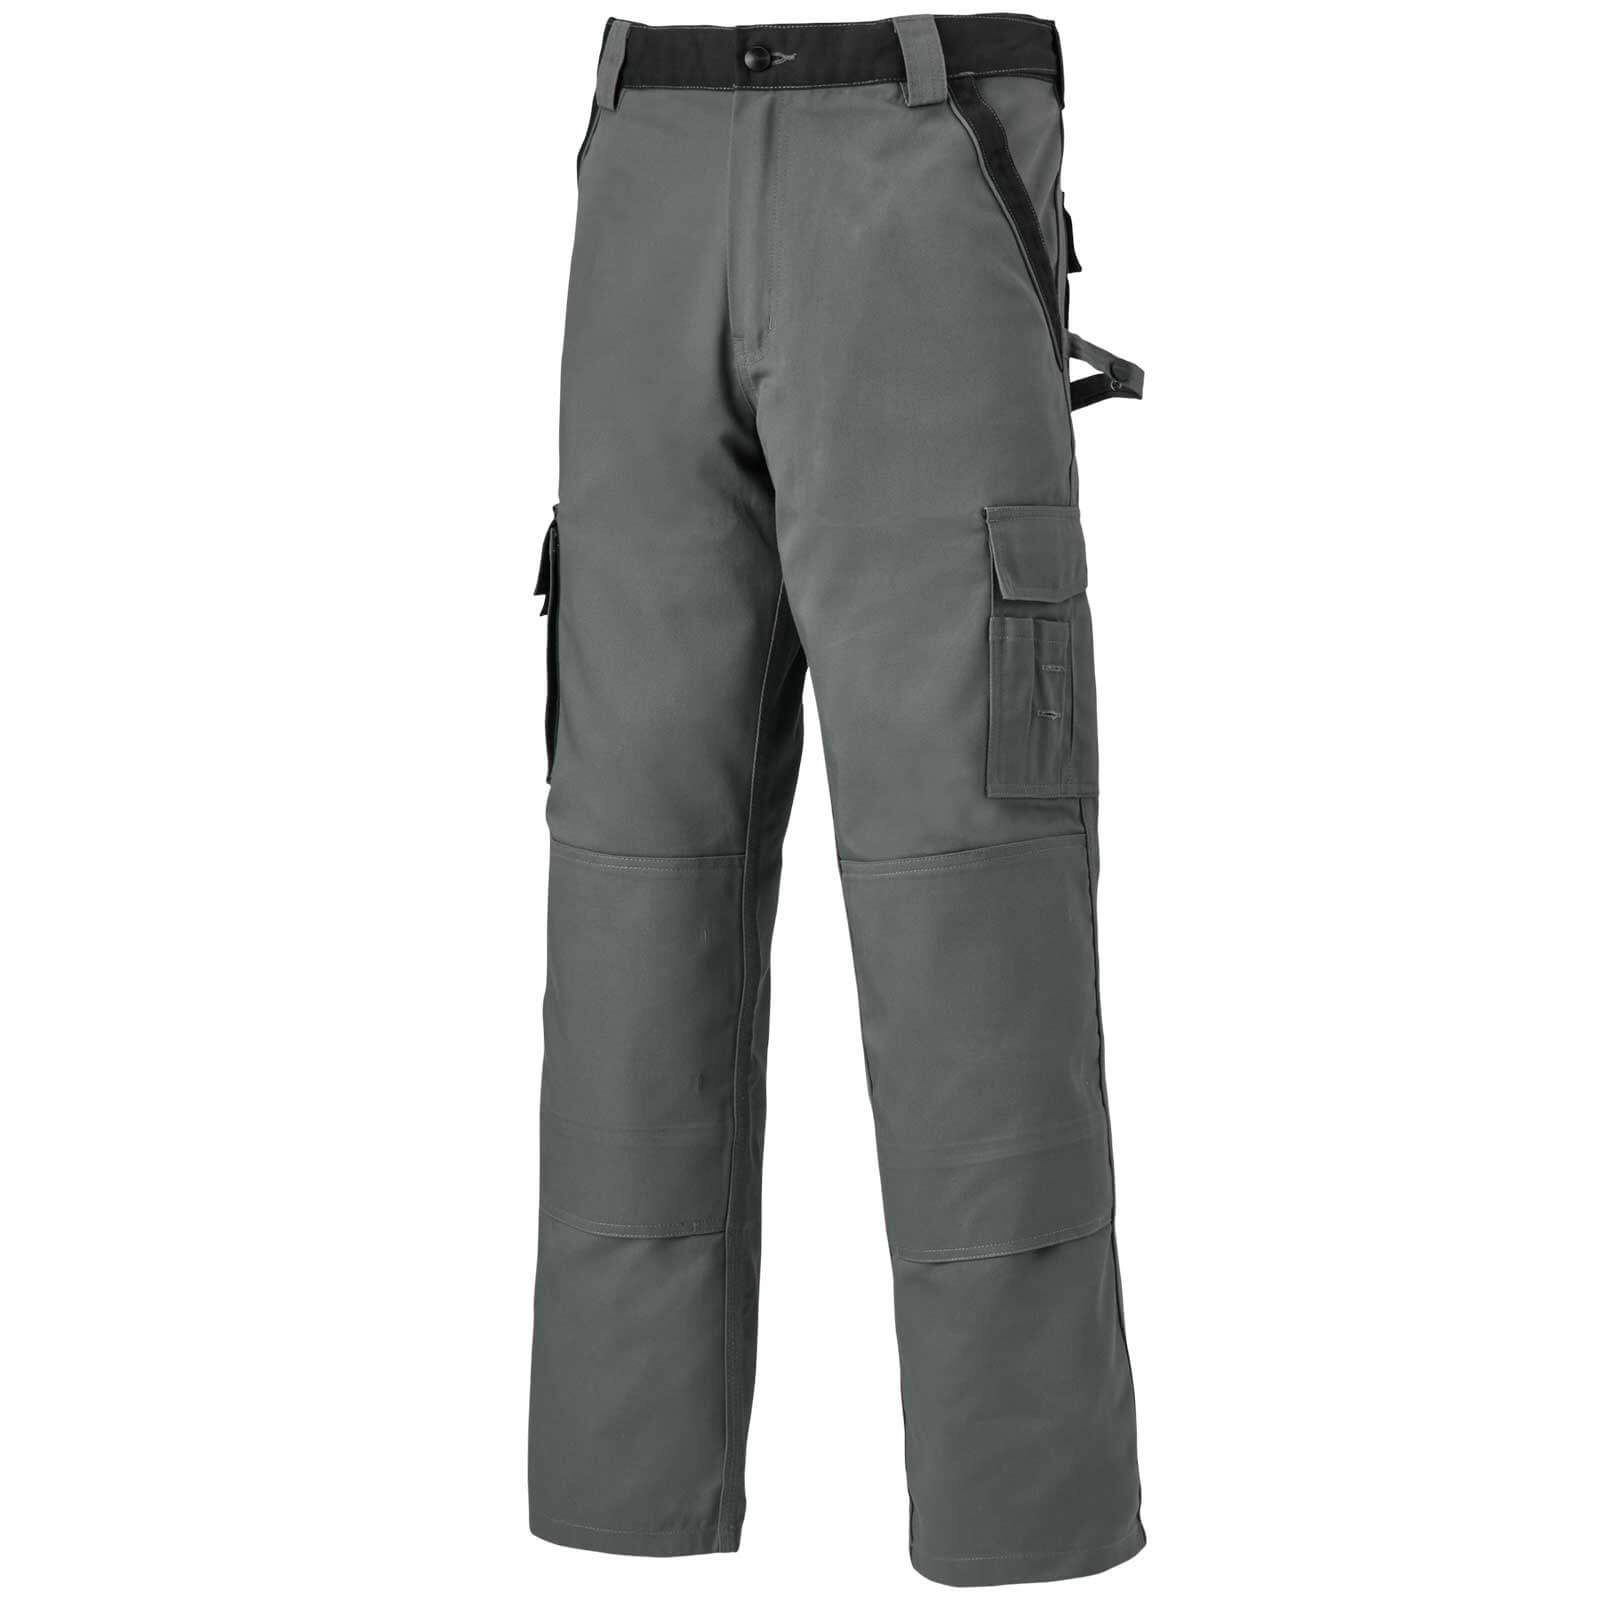 Dickies 30032 Industry 2.0 Work Trousers Grey / Black 38